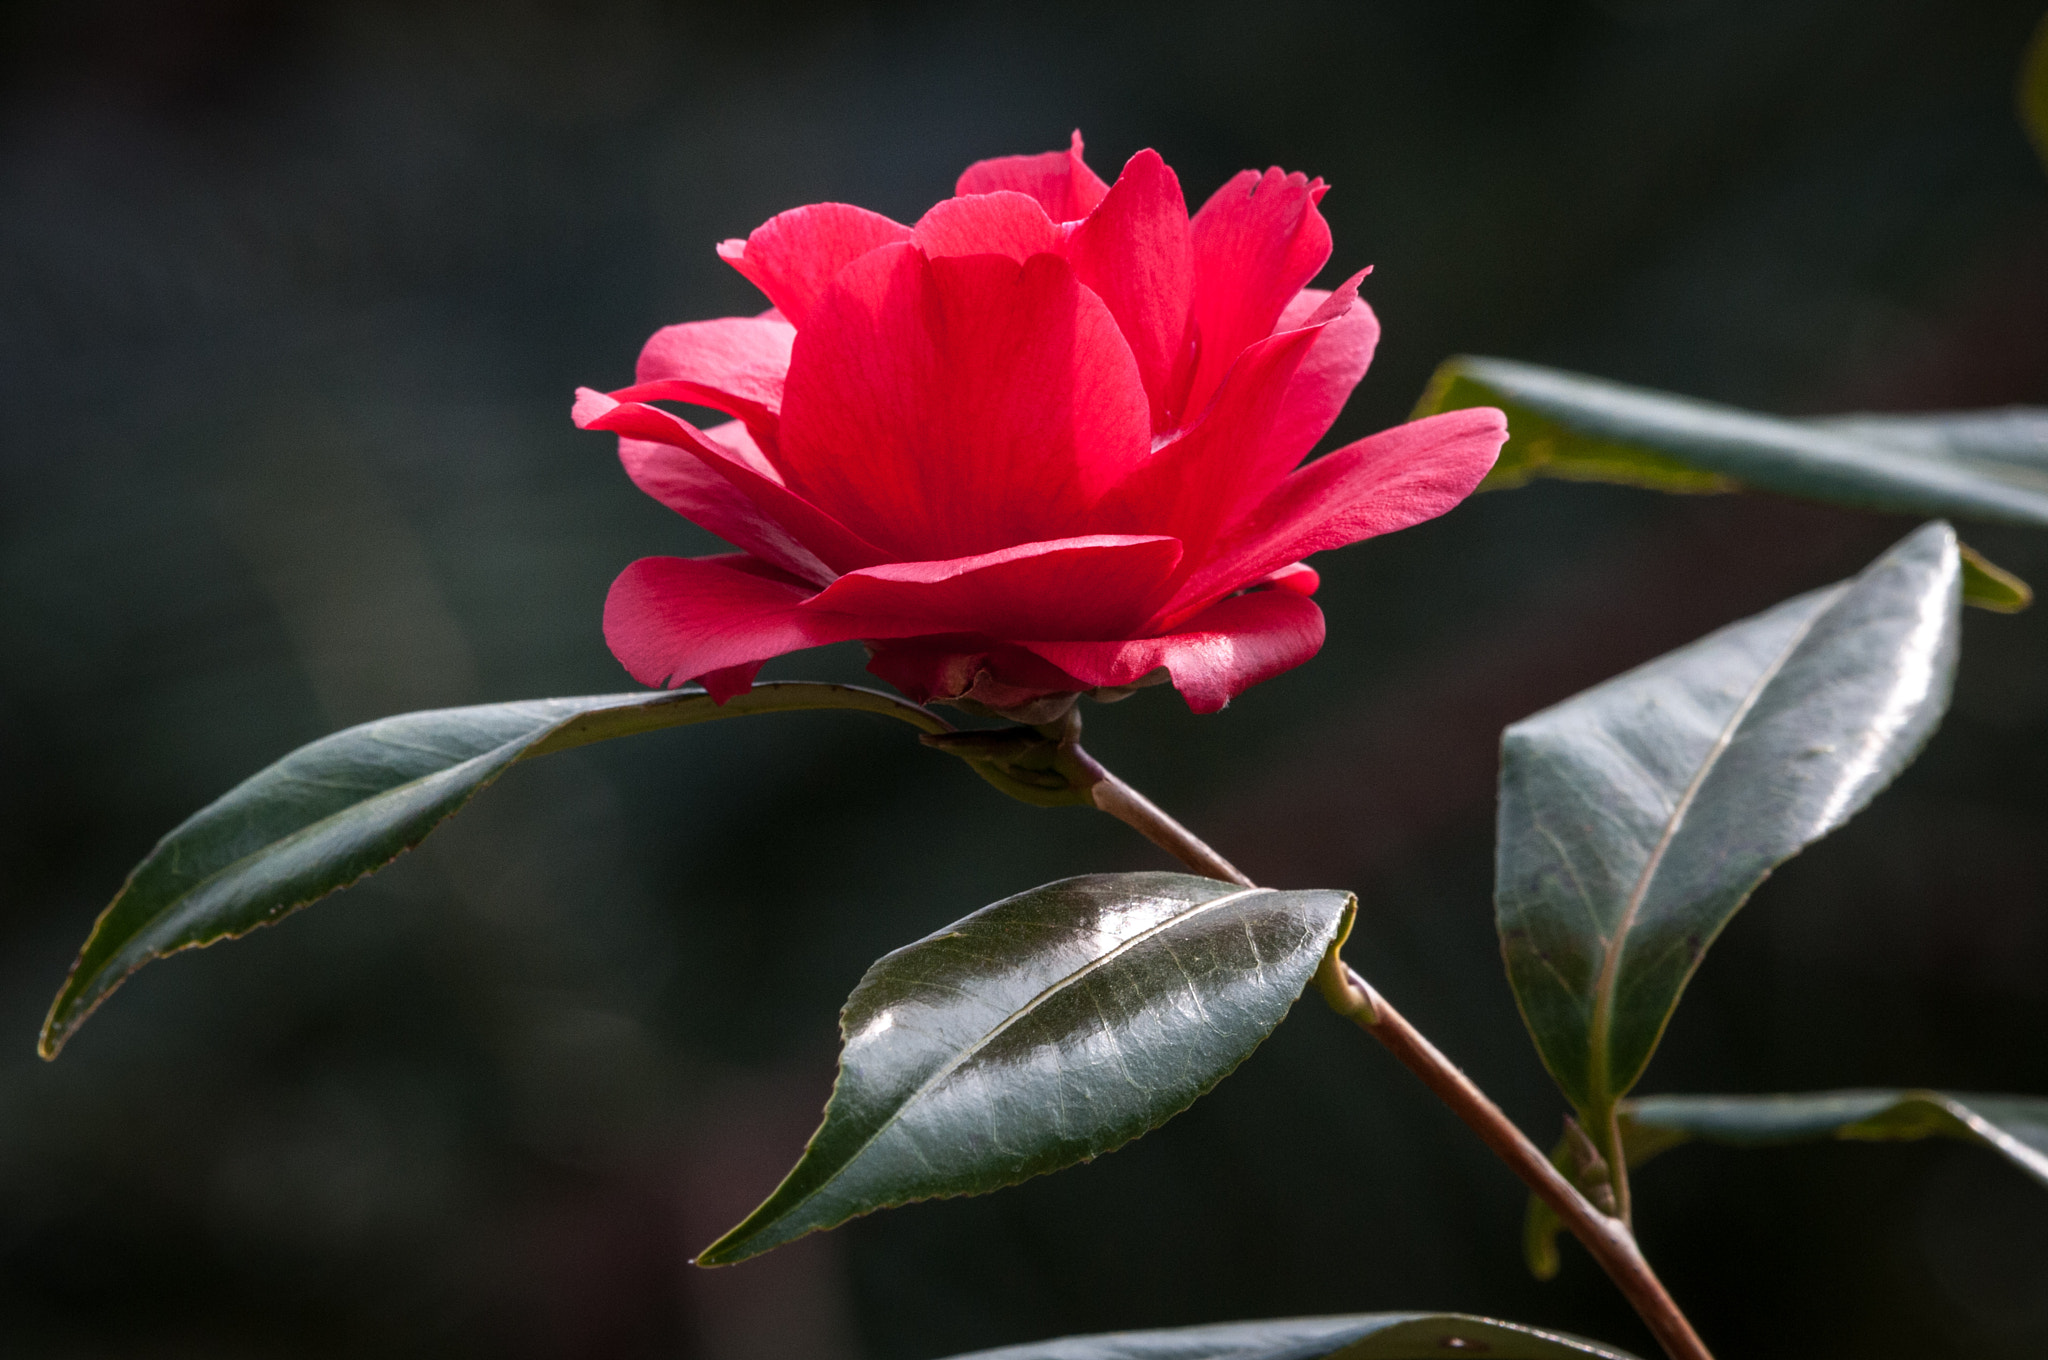 Nikon D300 sample photo. Camellia 'kuro delight' photography